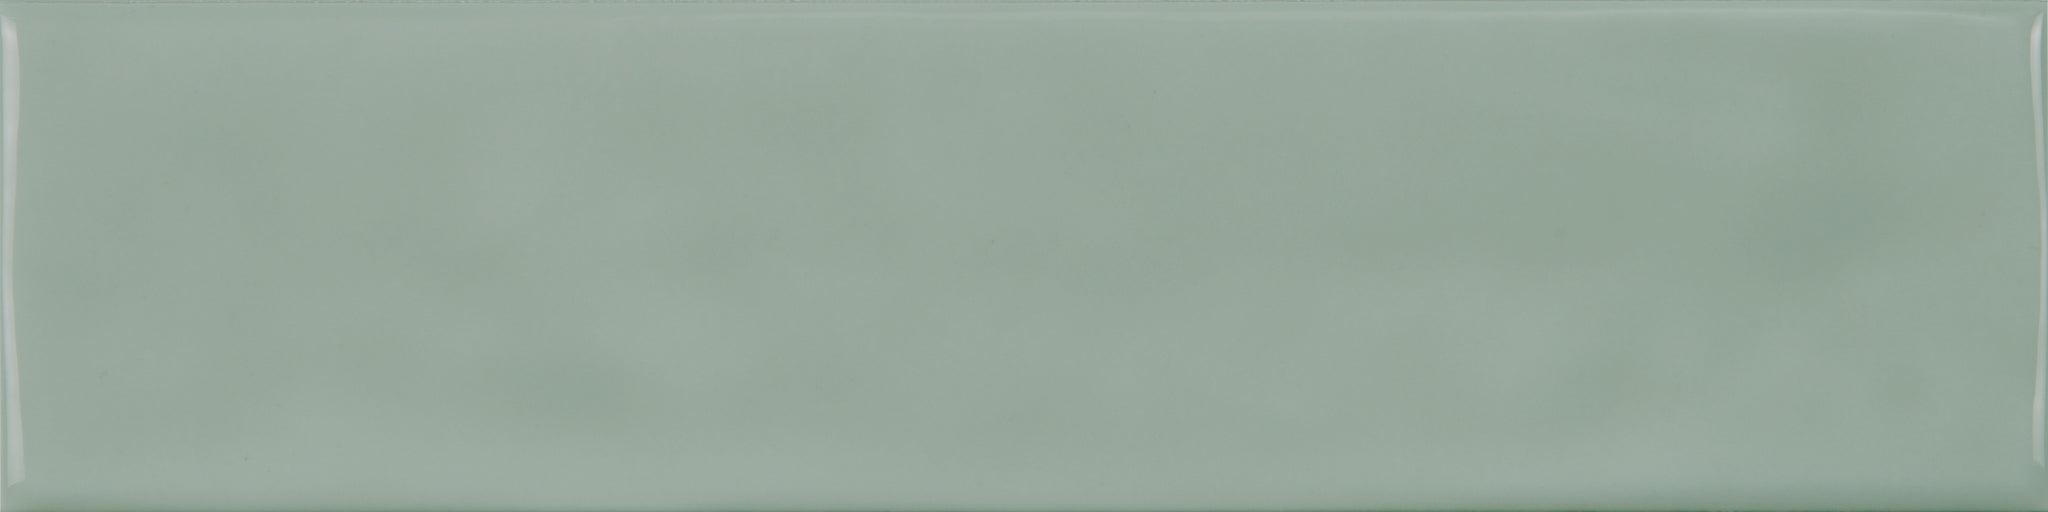 Marlow Blue Gloss Ceramic Wall 75X300mm